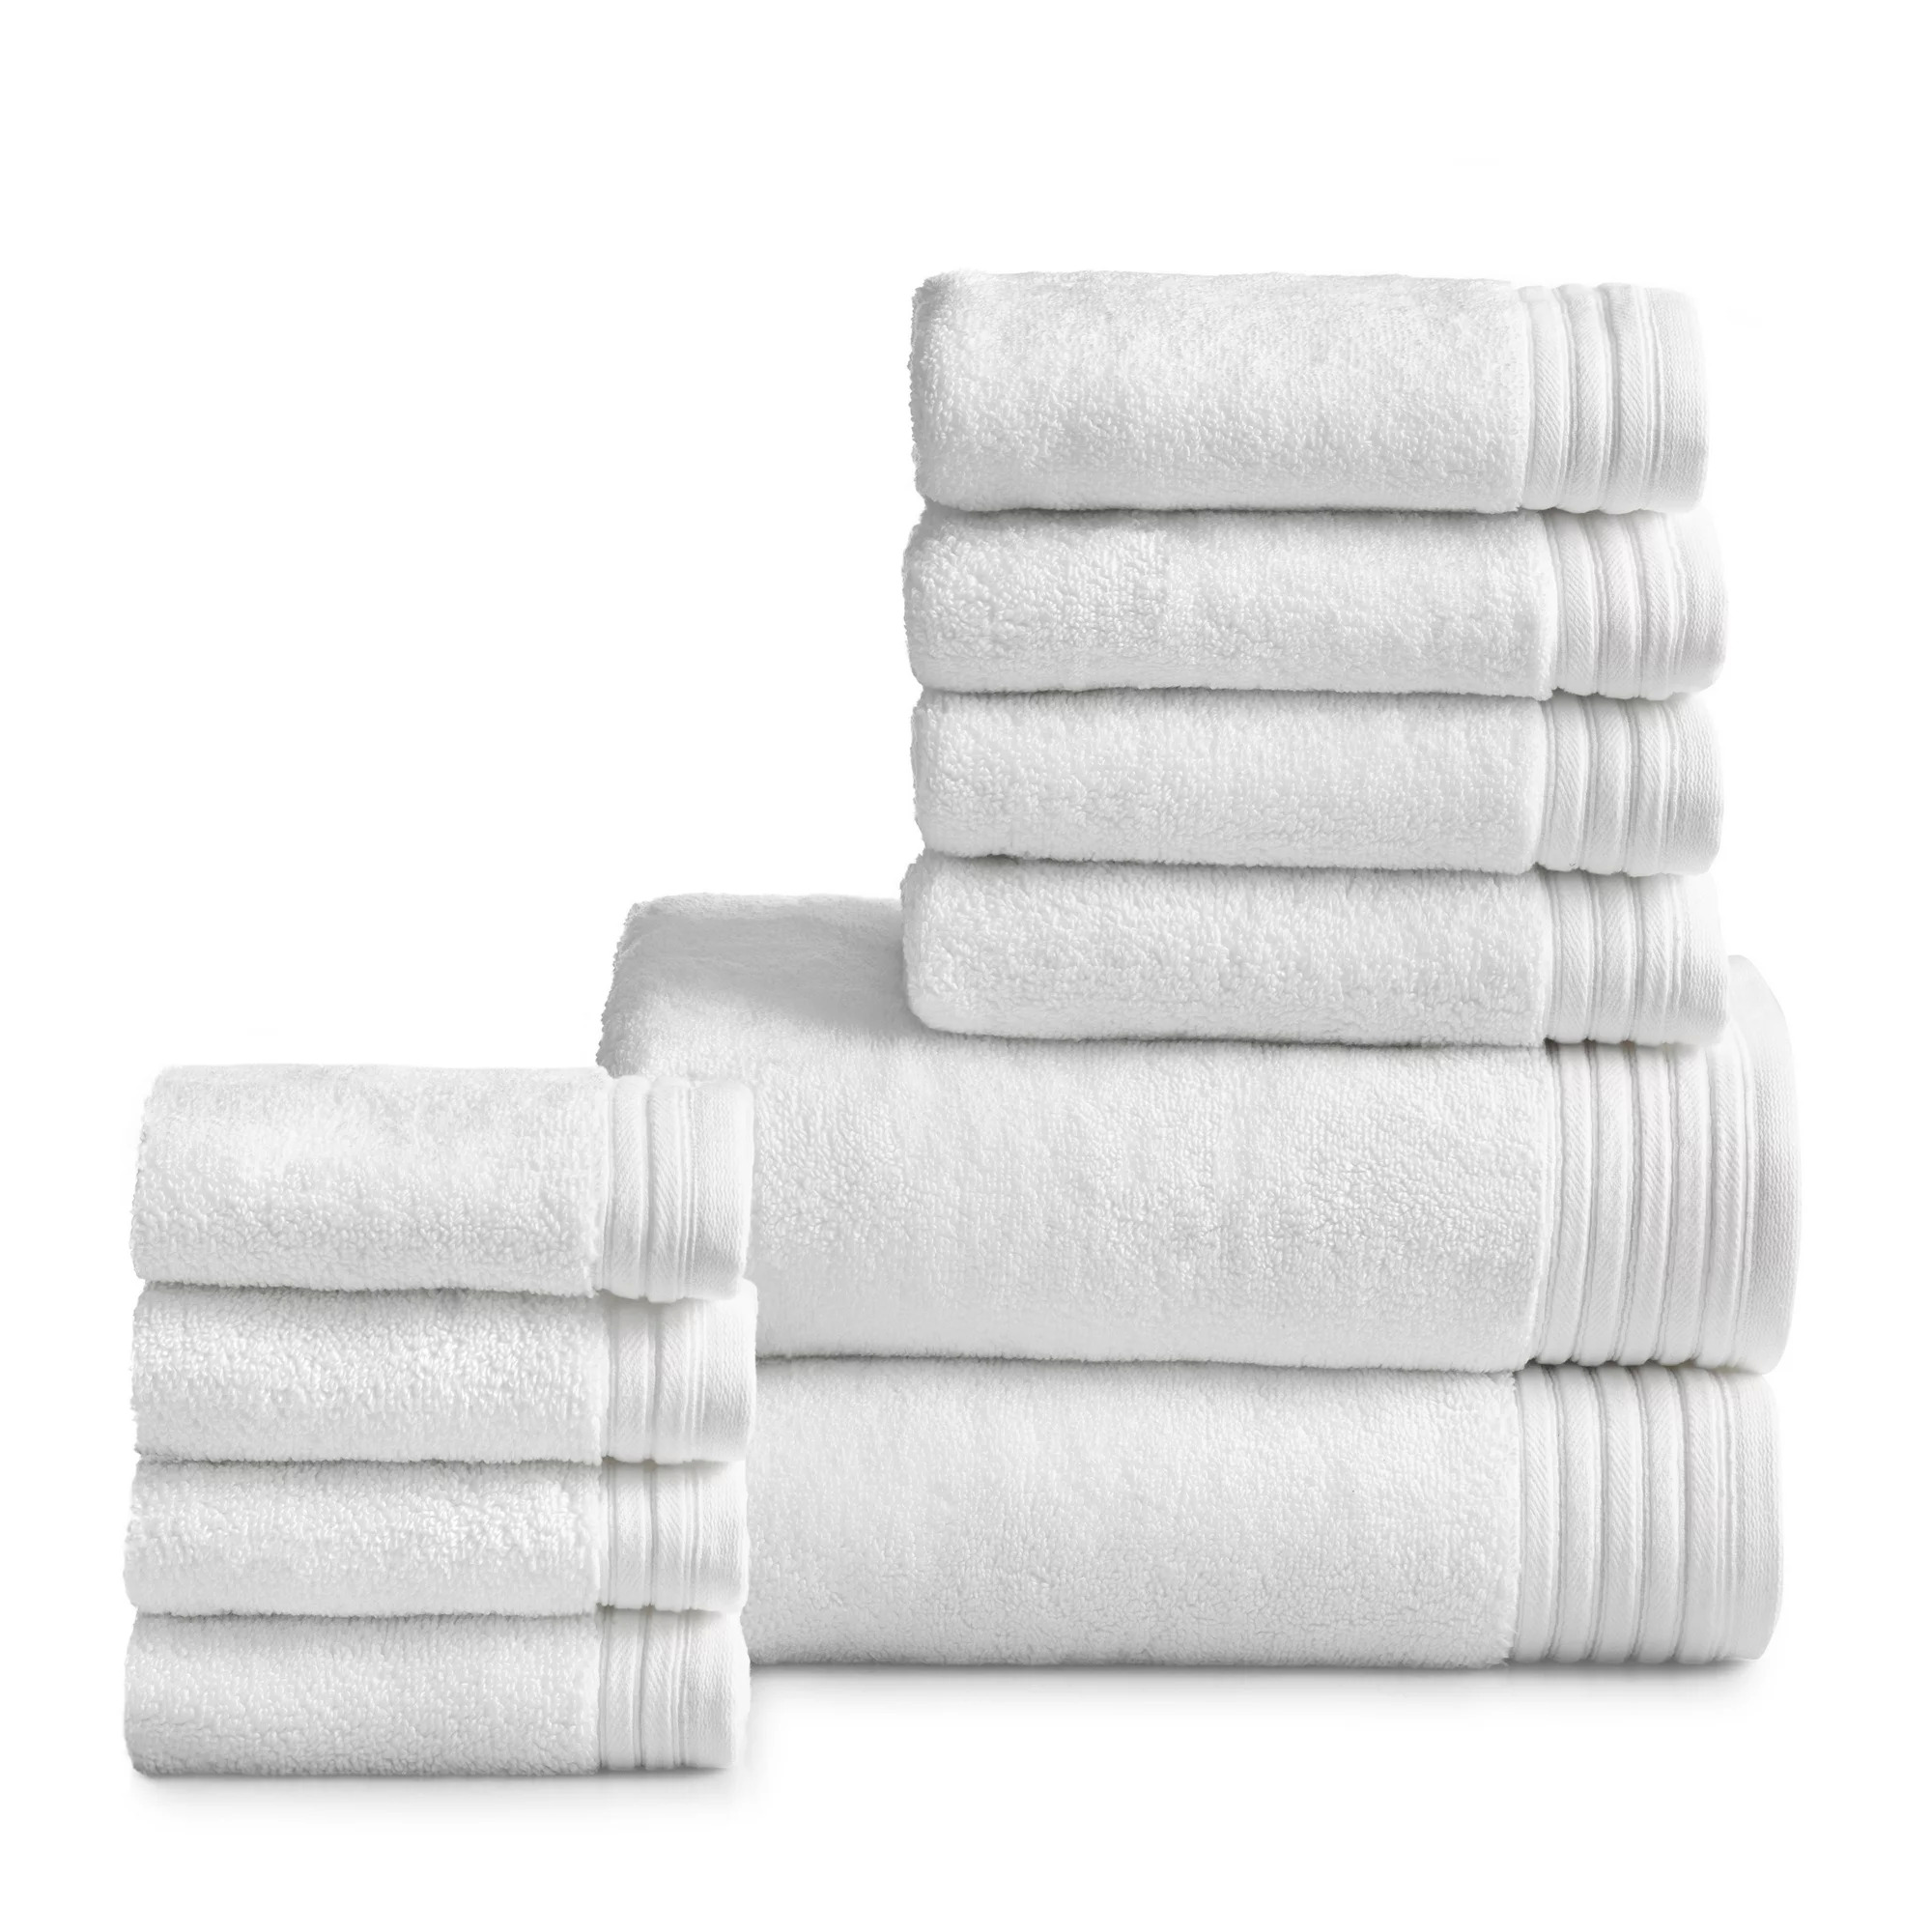 10-Piece Hotel Style Egyptian Cotton Towel Set (White) $9.98 + Free S&H w/ Walmart+ or $35+